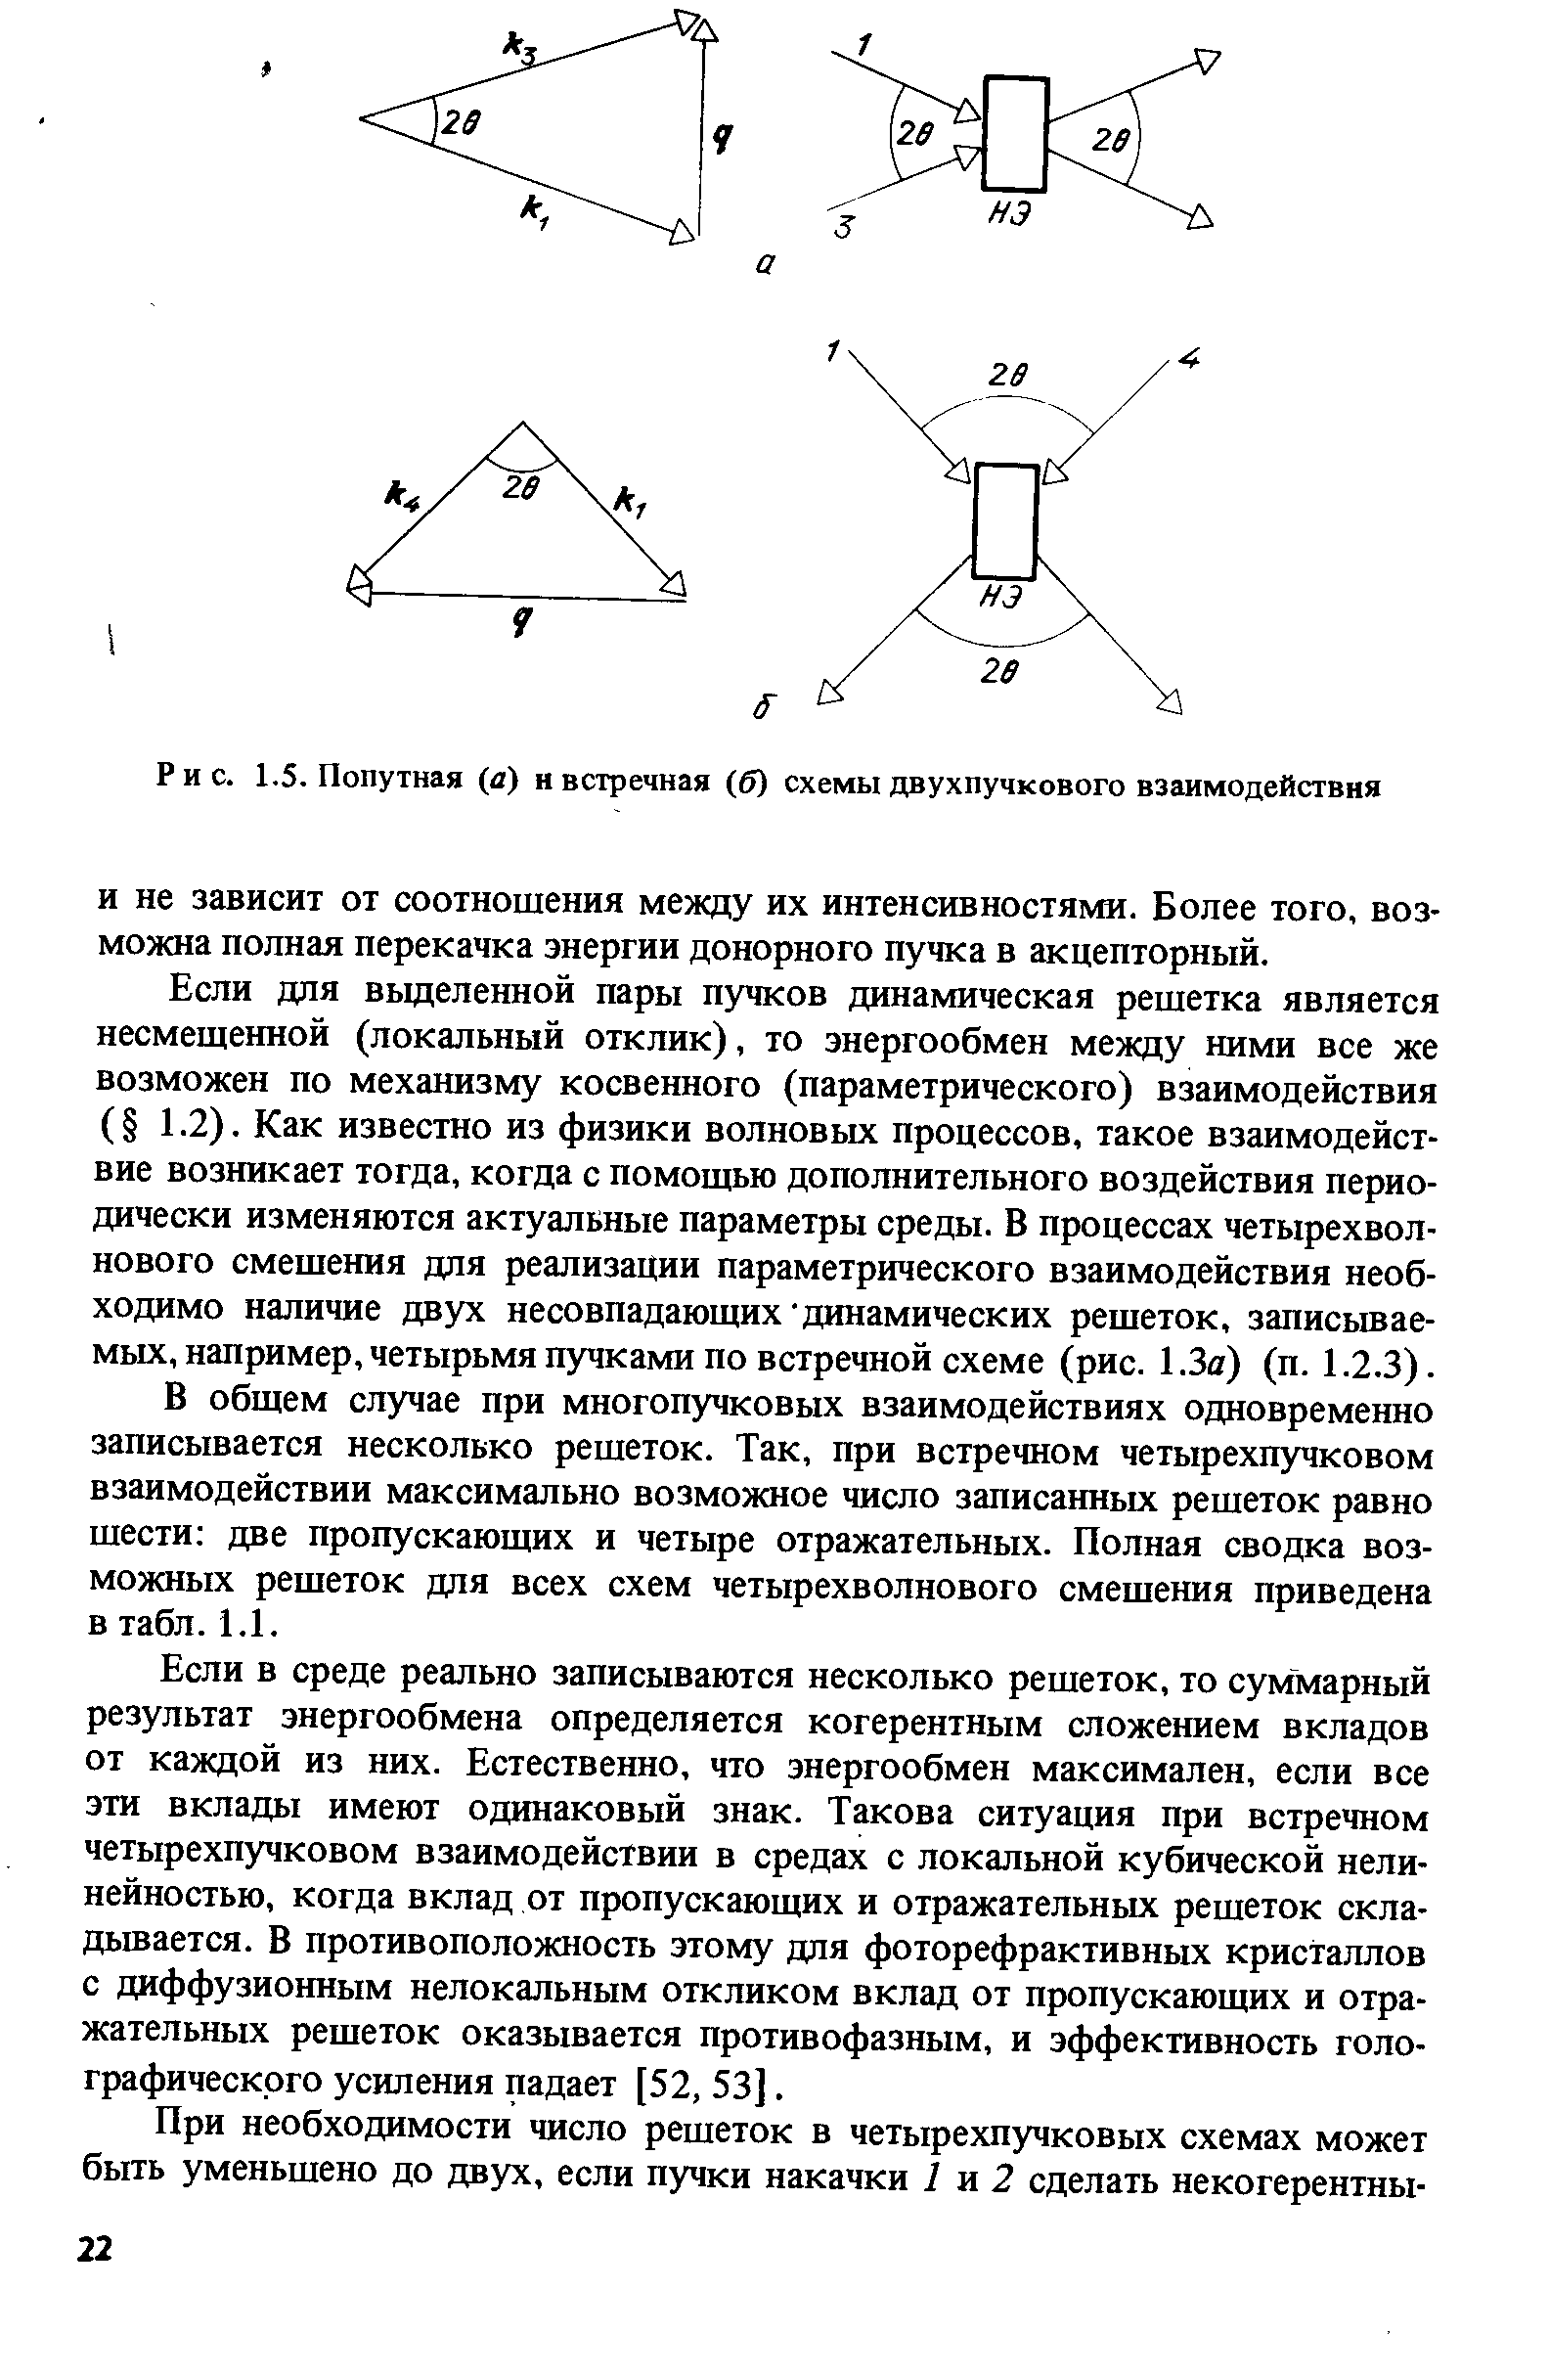 Рис. 1.5. Попутная (д) и встречная (б) схемы двухпучкового взаимодействия
